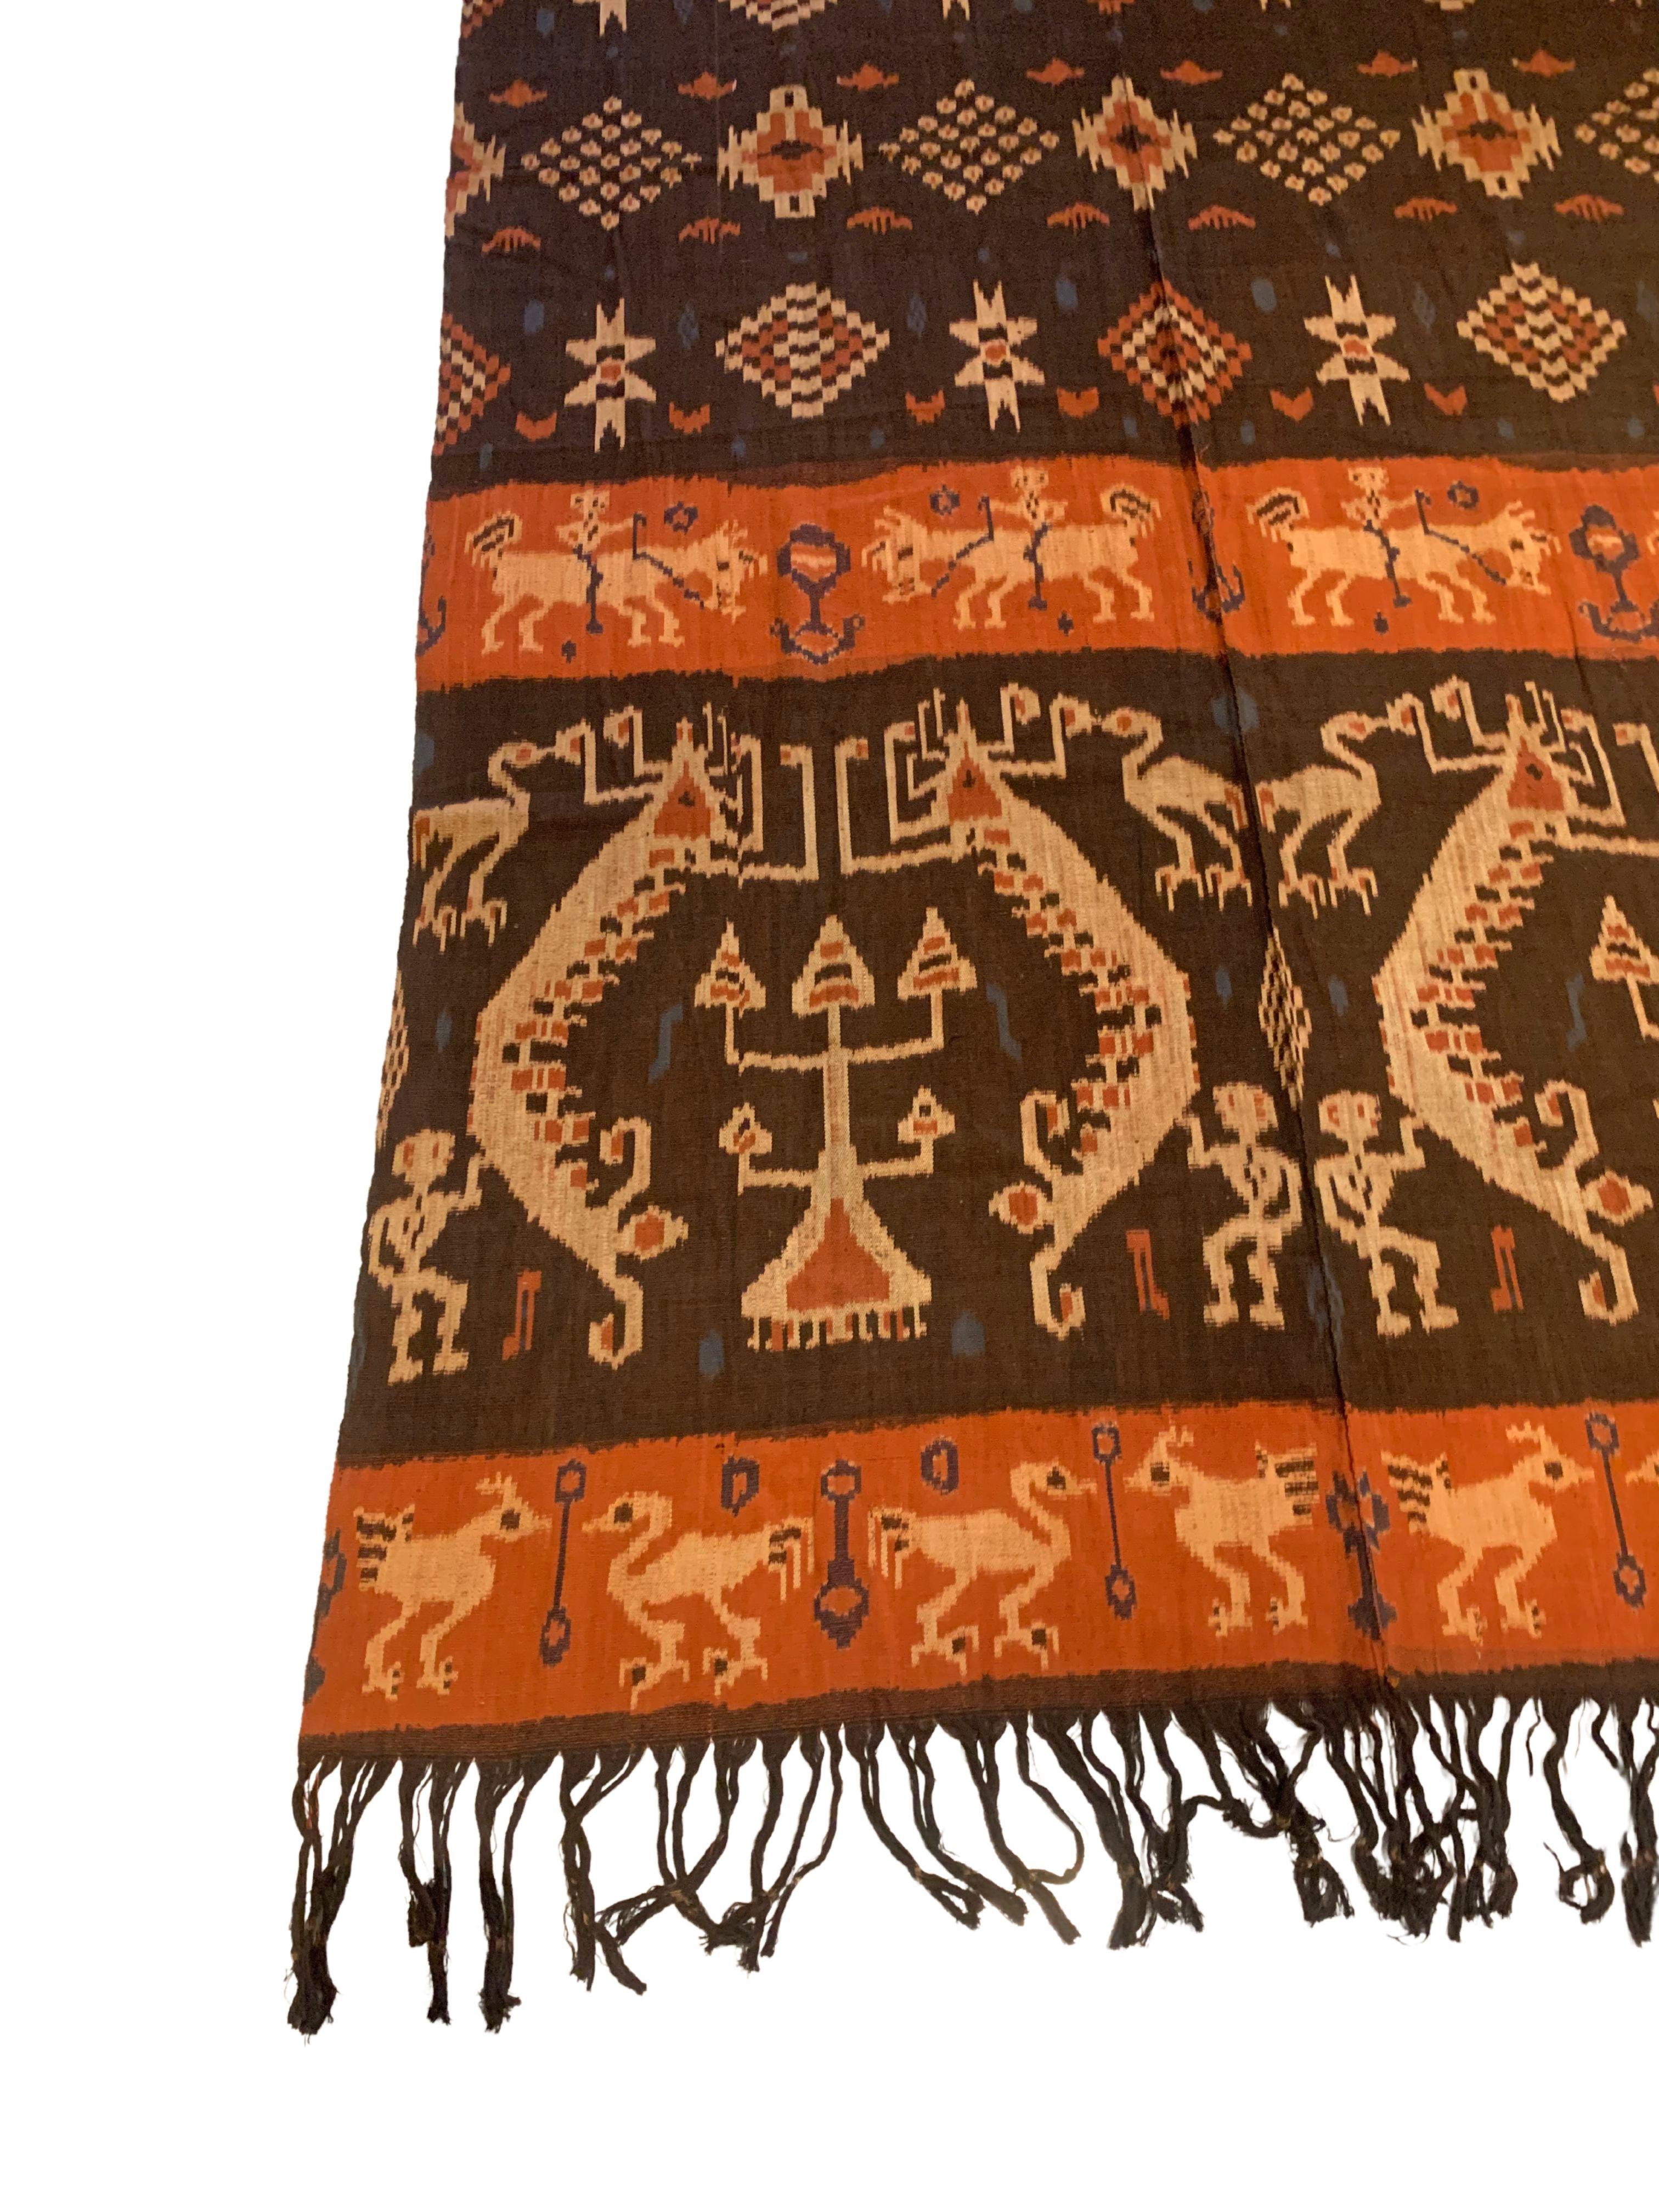 Dieses Ikat-Textil stammt von der Insel Sumba in Indonesien. Es wird mit natürlich gefärbten Garnen nach einer seit Generationen überlieferten Methode handgewebt. Es zeigt eine atemberaubende Vielfalt von Stammesmustern und -motiven. Es sind die